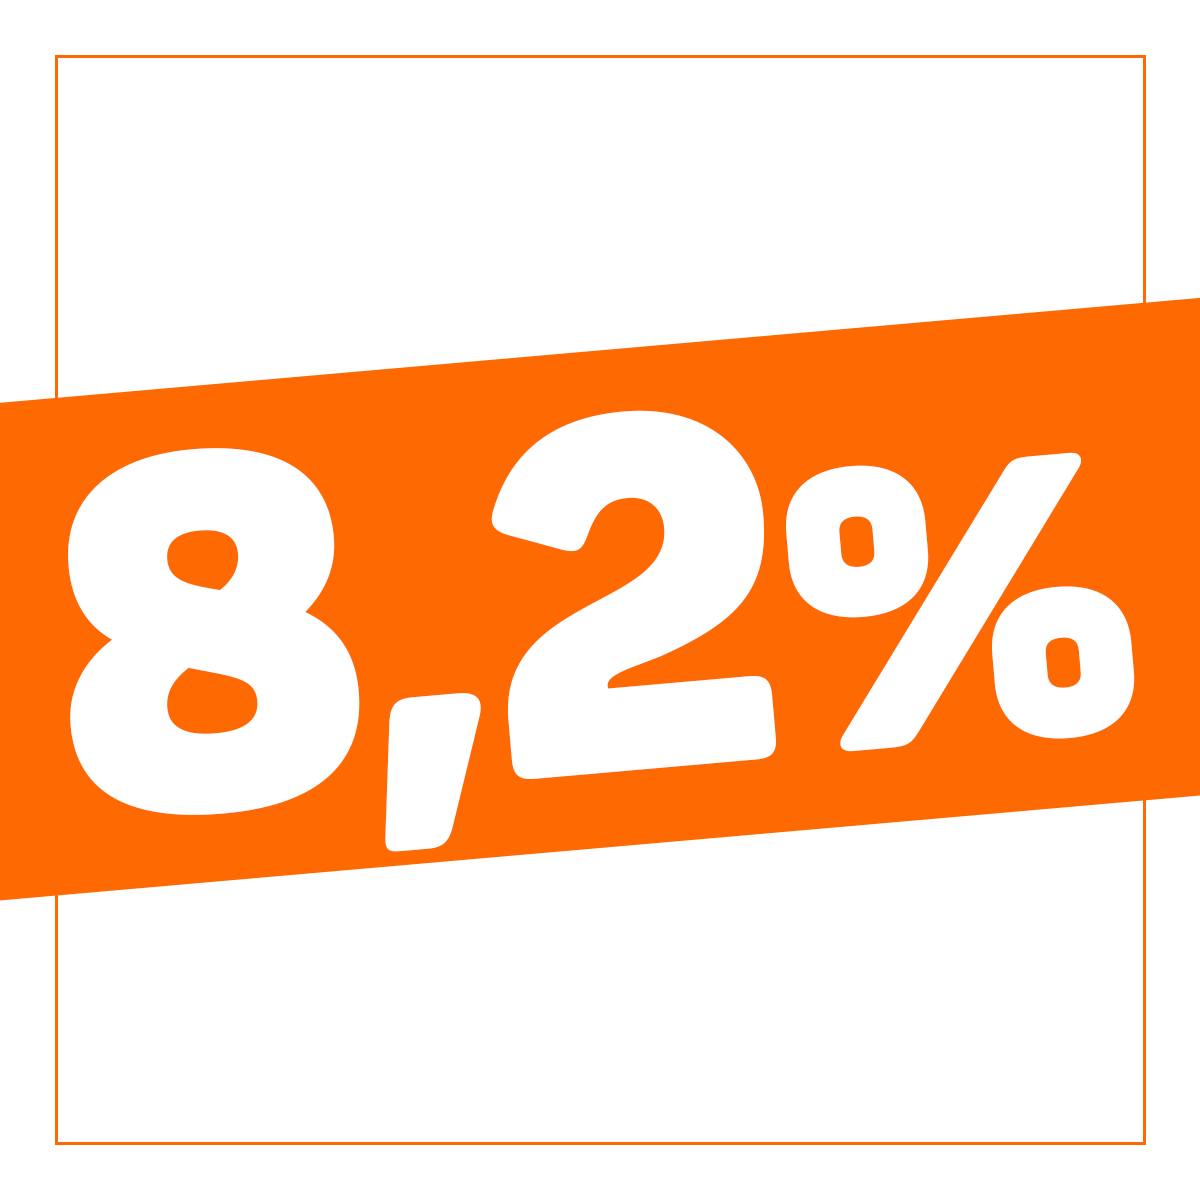 8,2%-kal erősödött a magyar gazdaság teljesítménye az első negyedévben.  A jelenleg elérhető adatok szerint ez az egyik legmagasabb növekedés az Európai Unióban